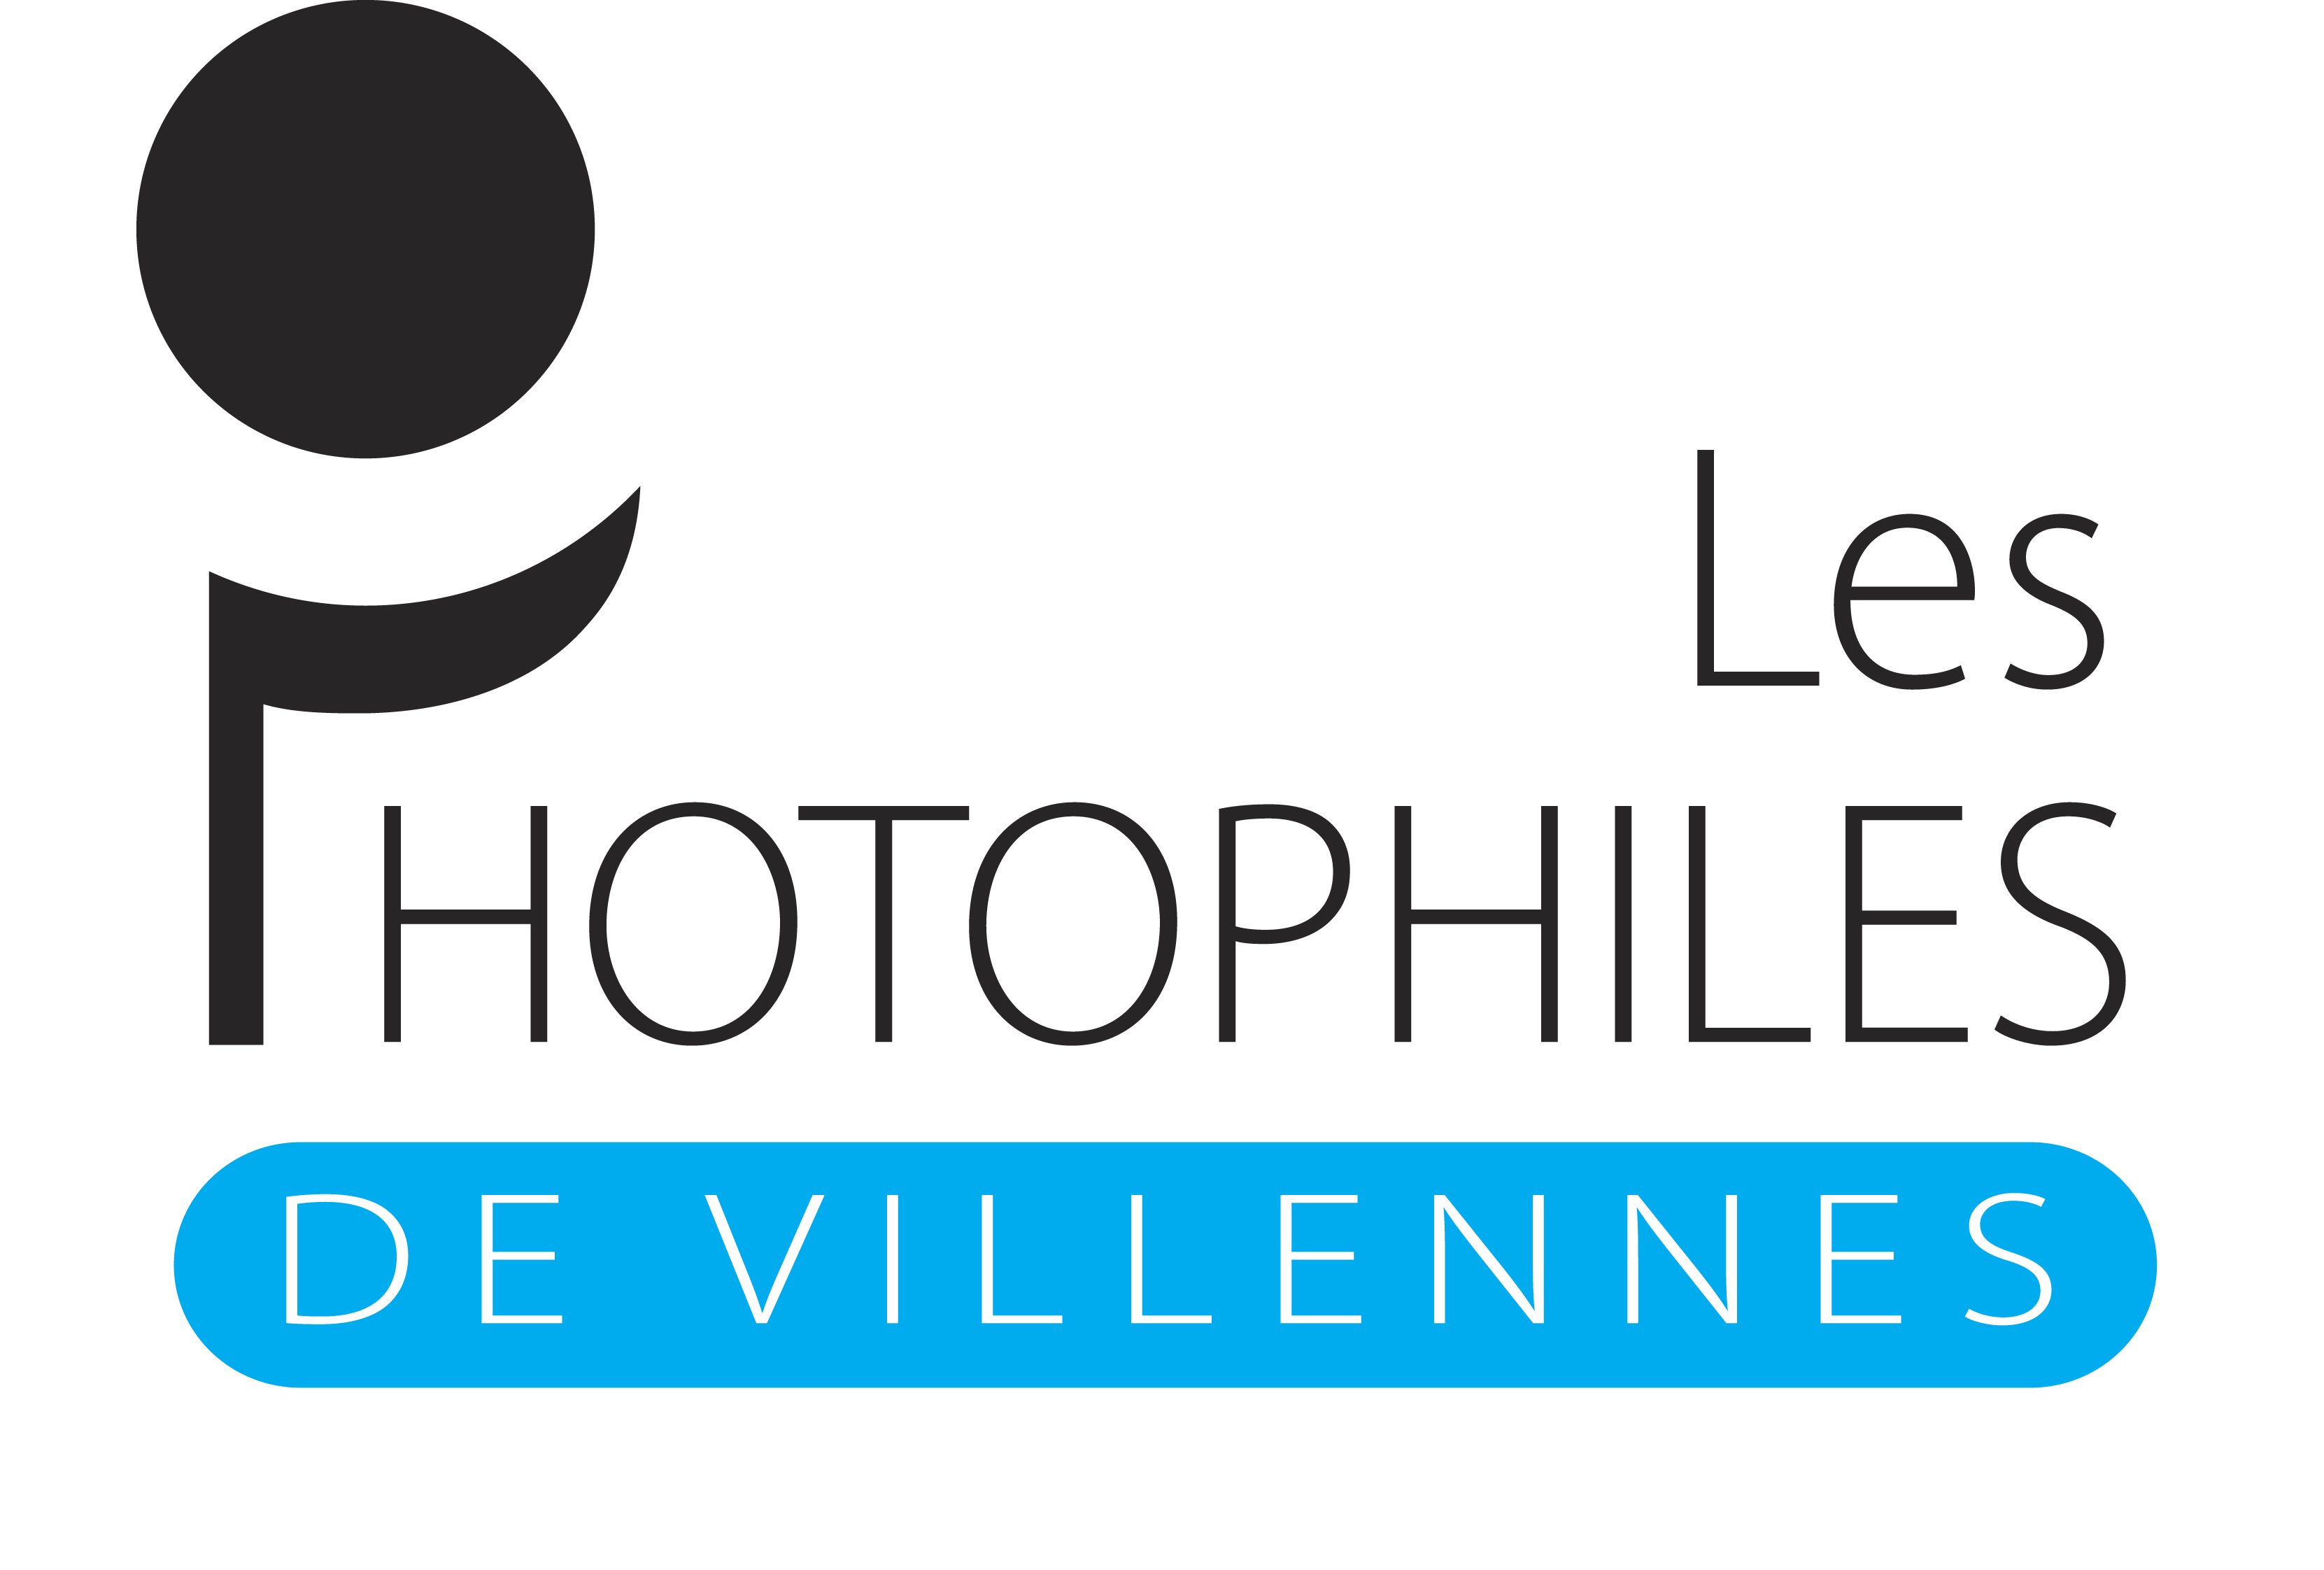 Les Photophiles de Villennes